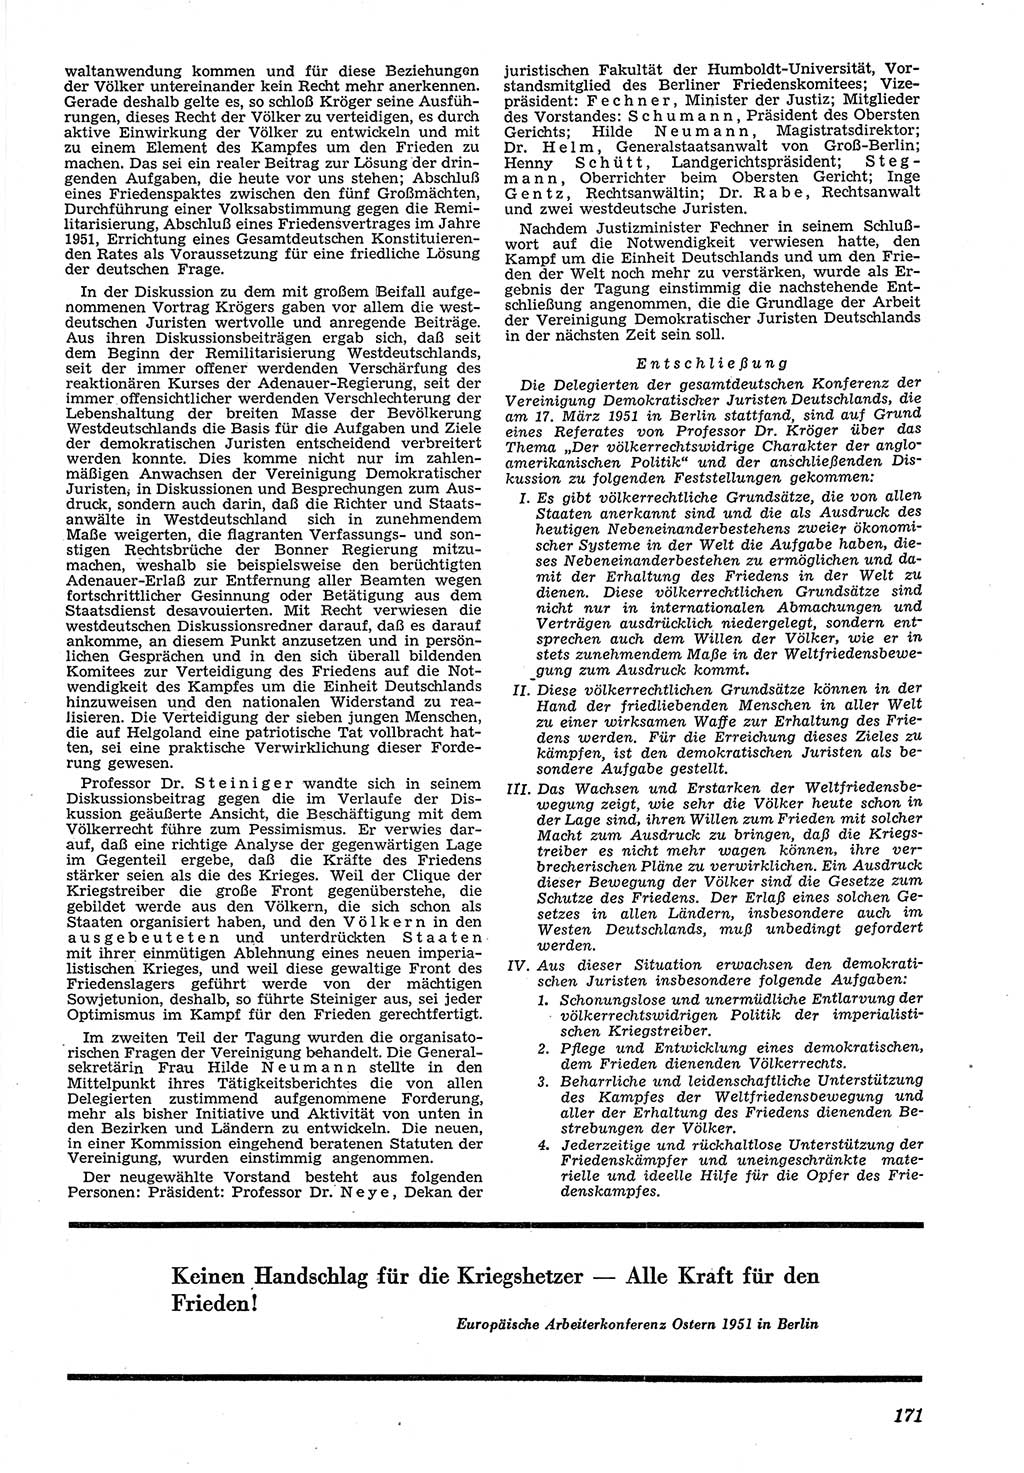 Neue Justiz (NJ), Zeitschrift für Recht und Rechtswissenschaft [Deutsche Demokratische Republik (DDR)], 5. Jahrgang 1951, Seite 171 (NJ DDR 1951, S. 171)